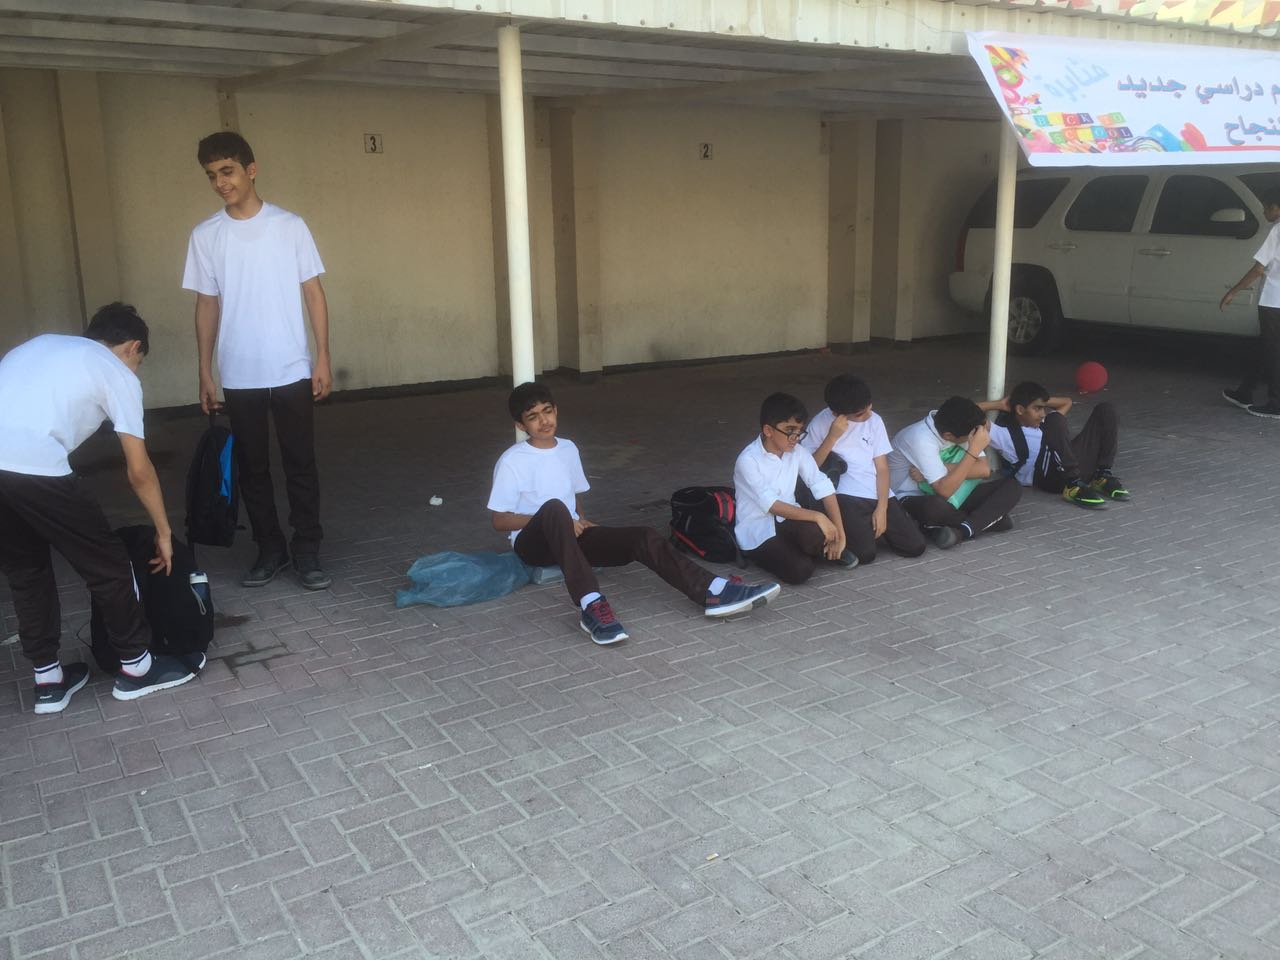 مجموعة من الطلبة انتظروا حافلتهم ساعة كاملة بعد نهاية الدوام المدرسي